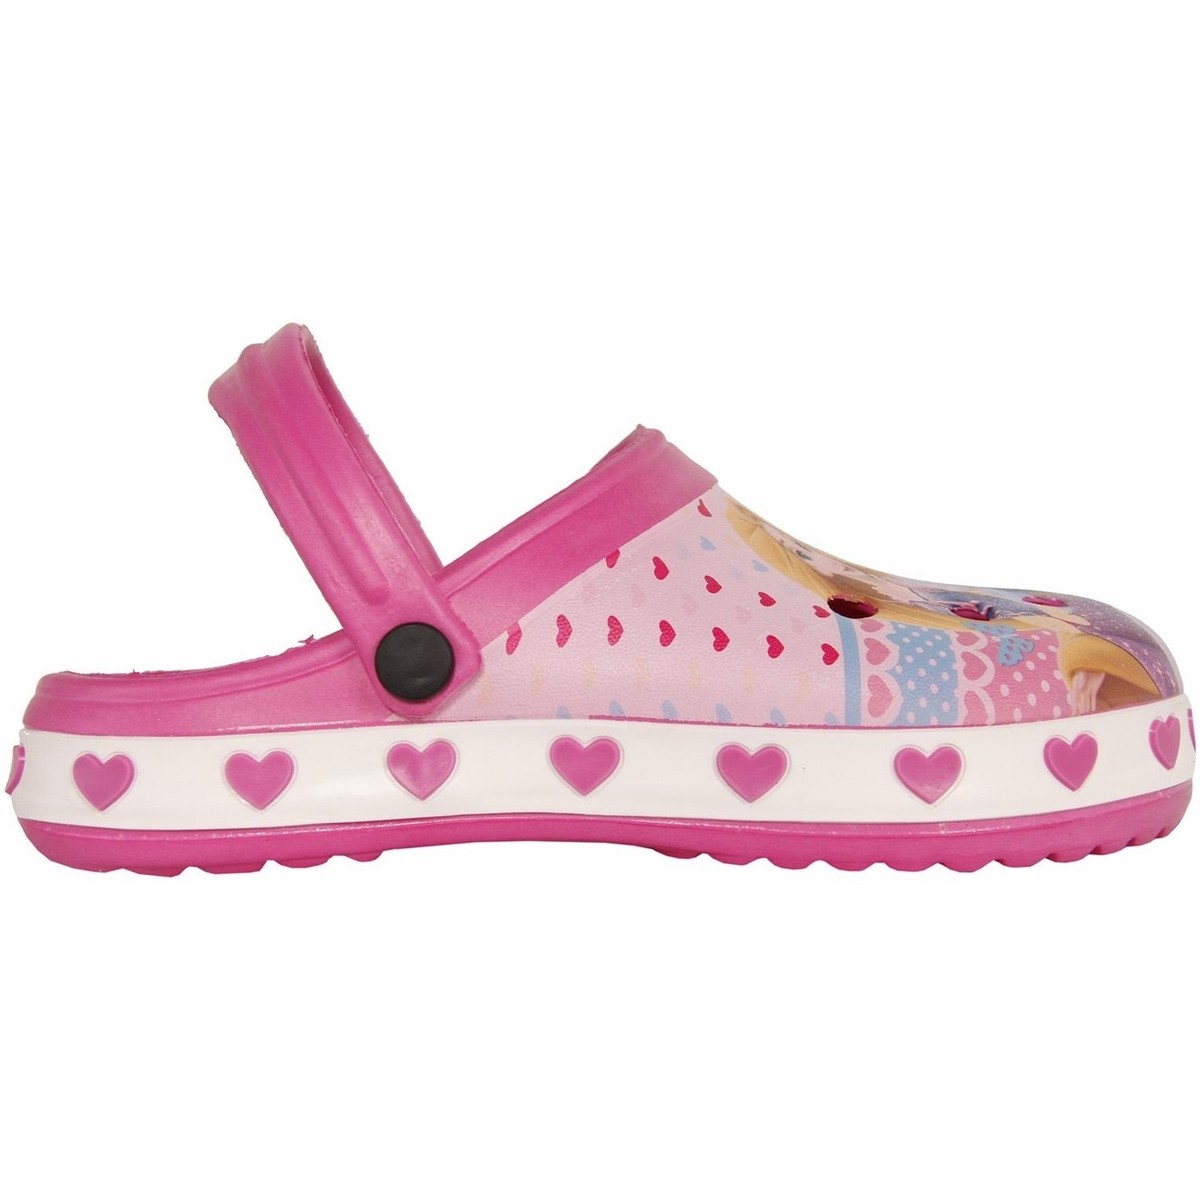 Sapatos Rapariga Tamancos Princesas WD7887 WD7887 